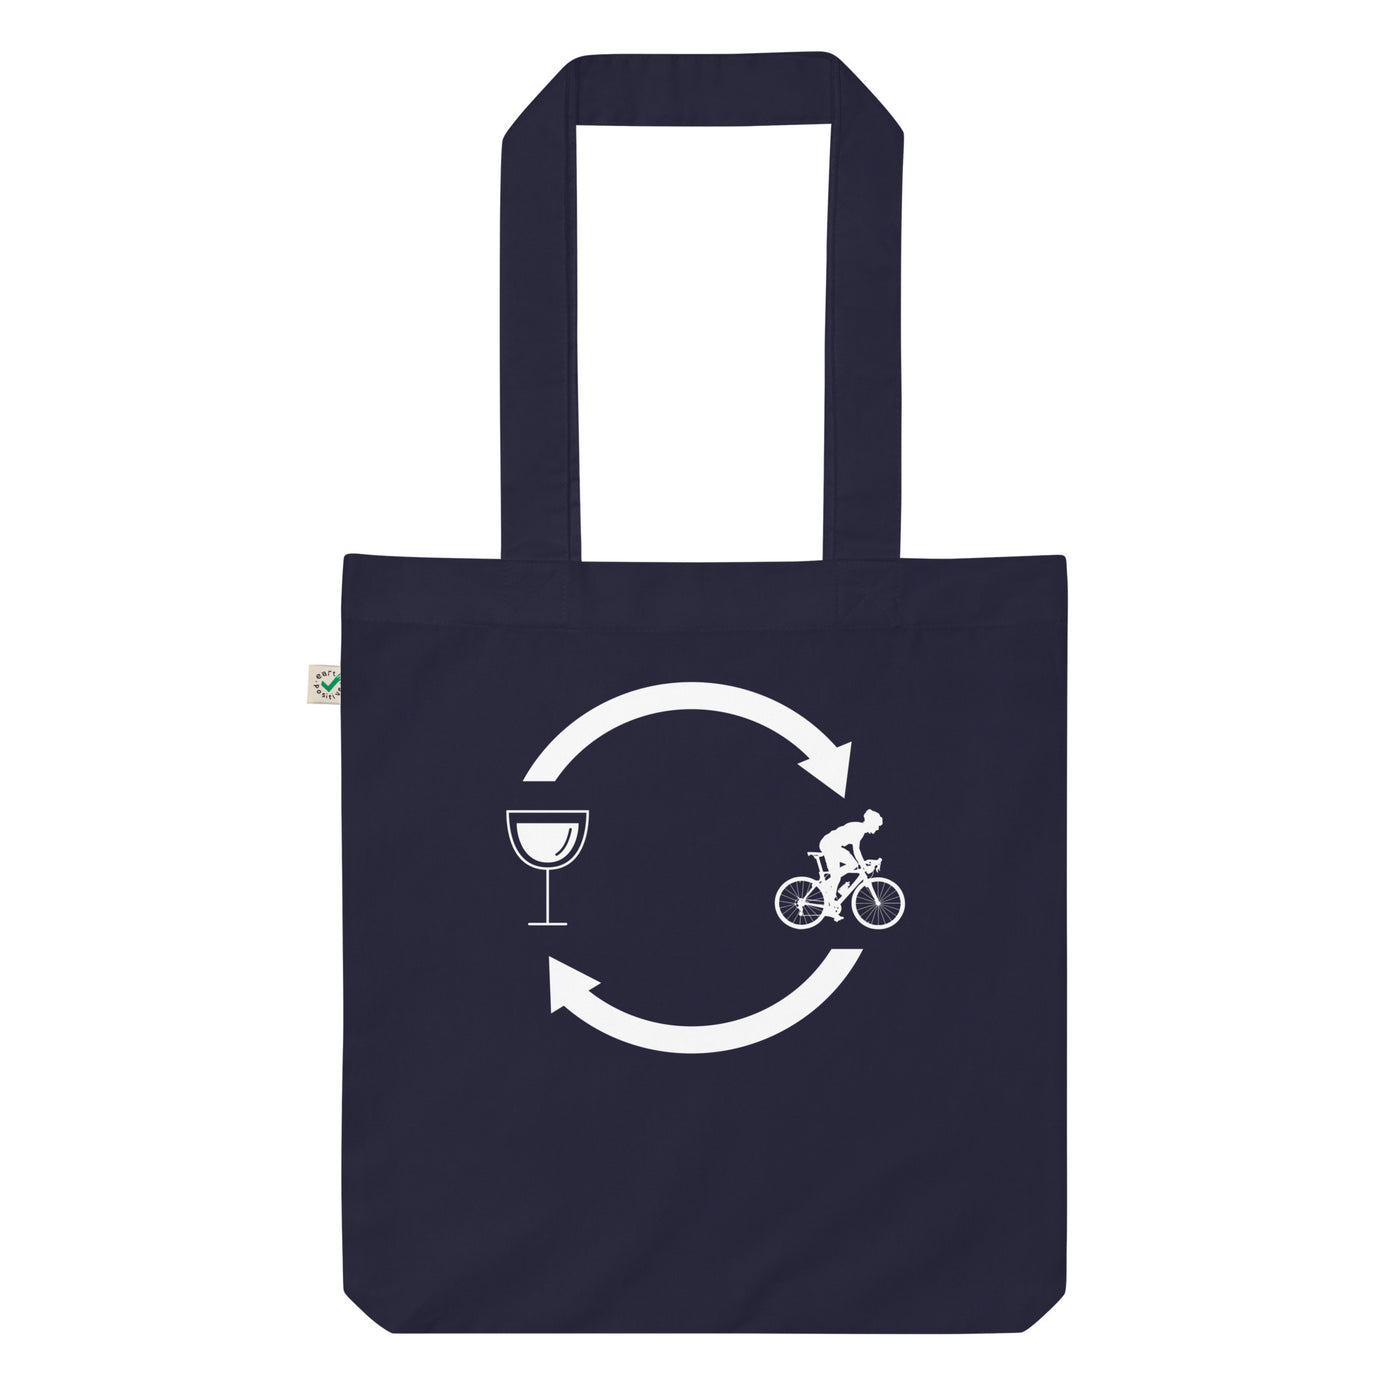 Wein, Ladepfeile Und Radfahren 1 - Organic Einkaufstasche fahrrad Navy